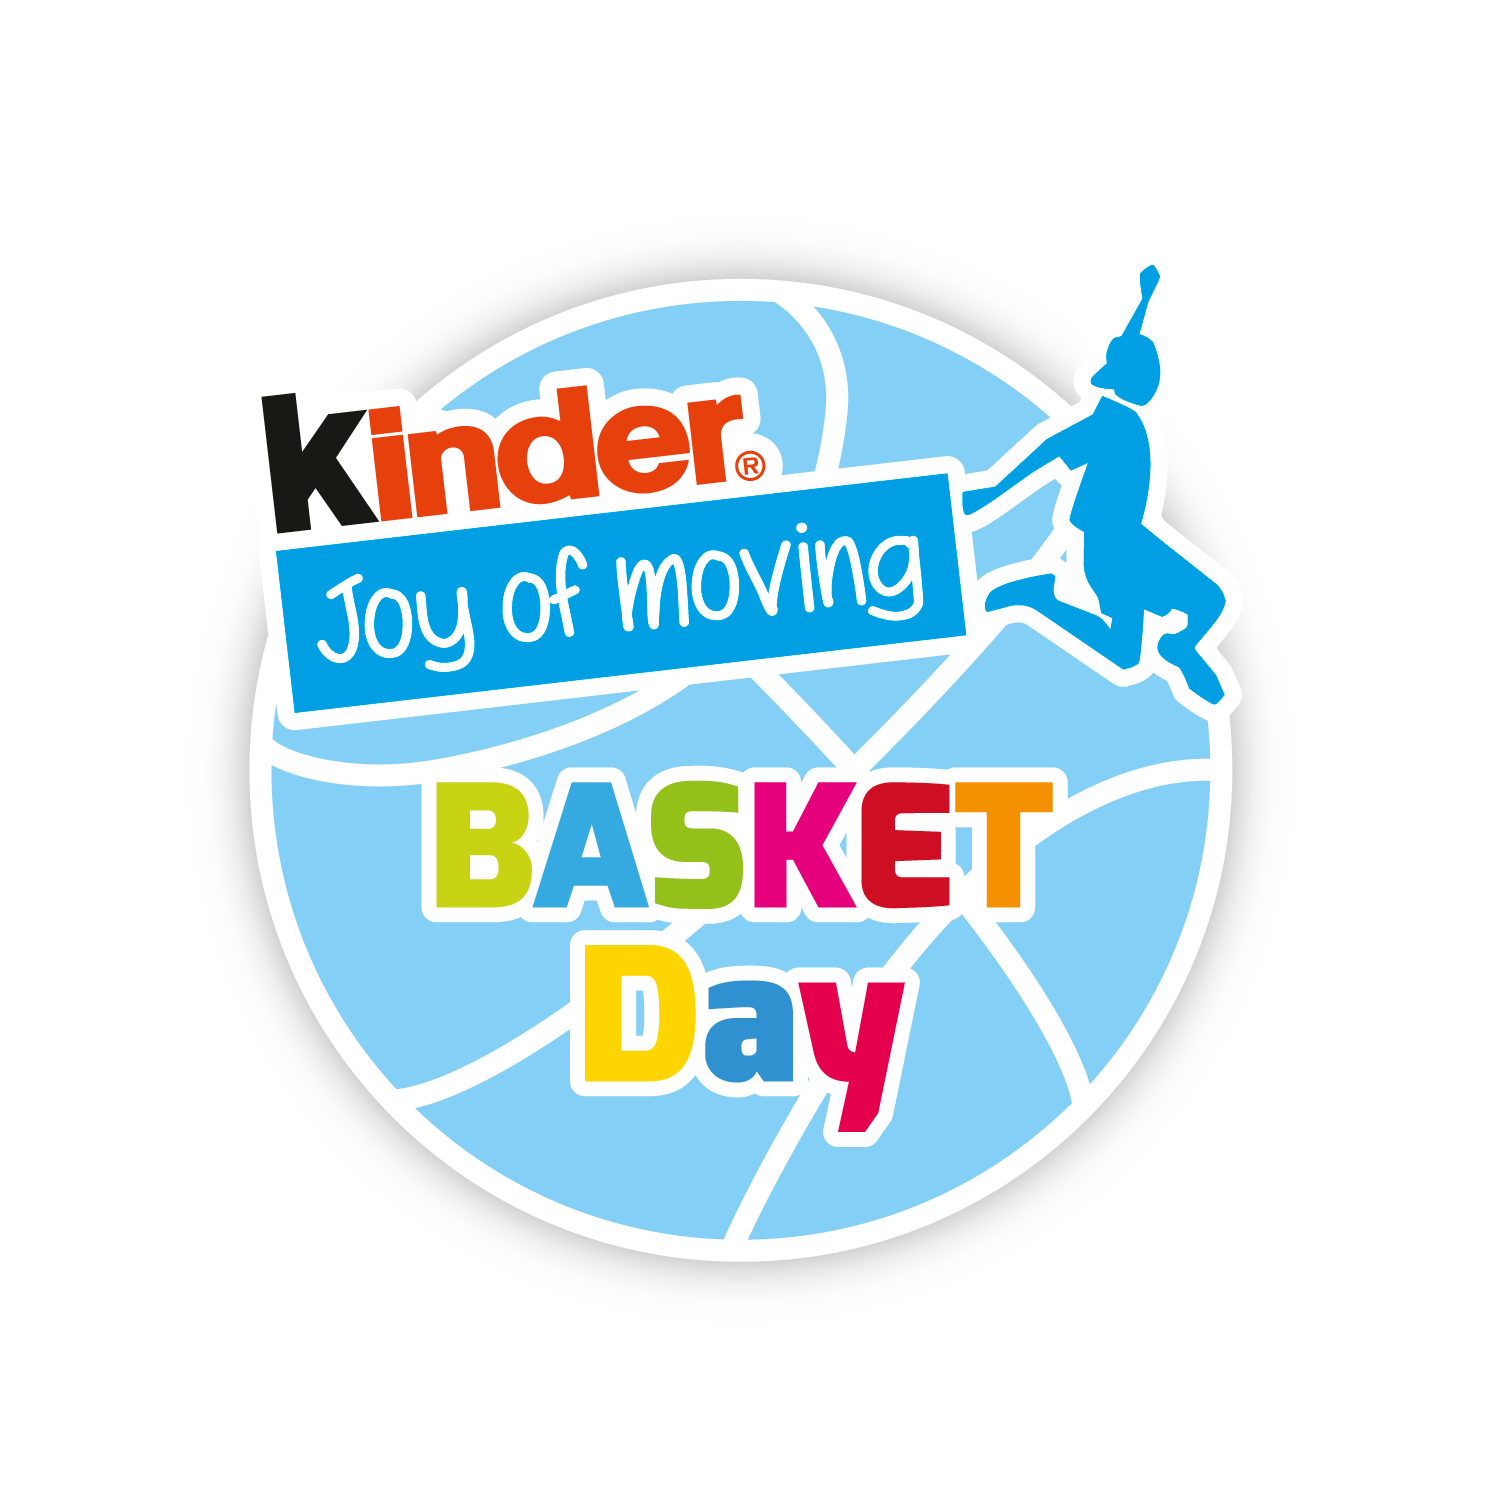 Kinder Joy of moving Basket Day